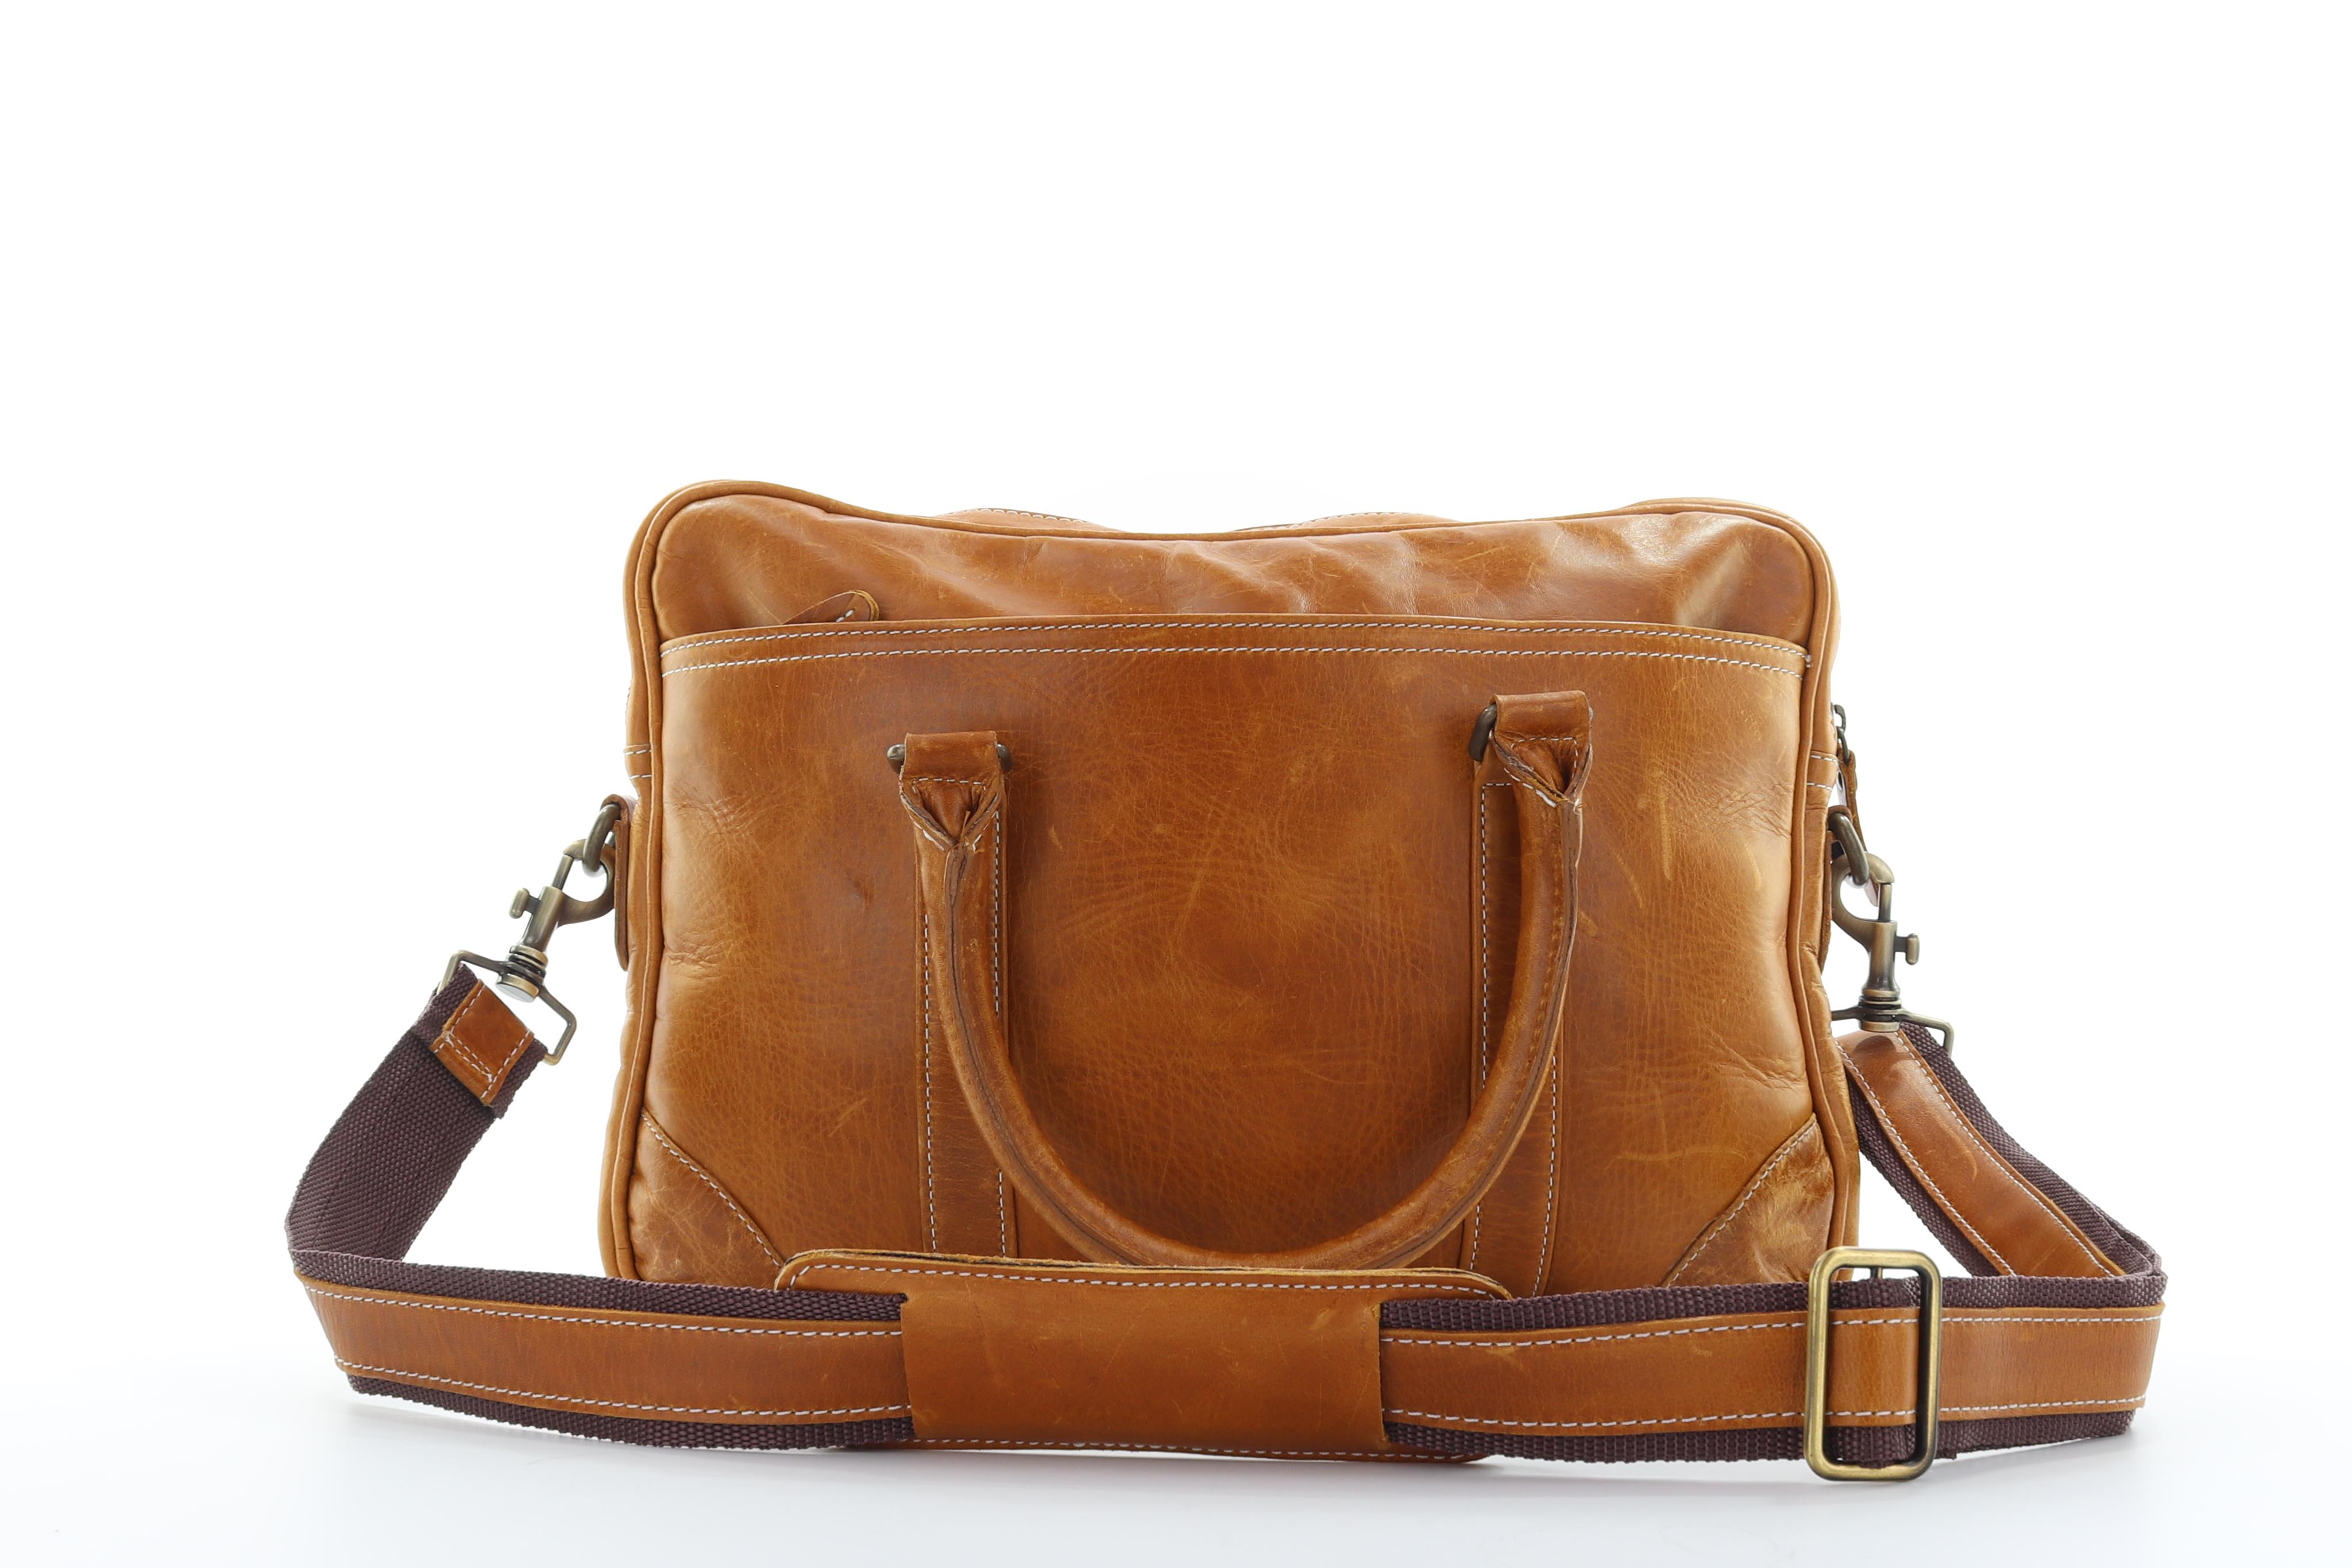 Hayden Leather Bag - Light Brown